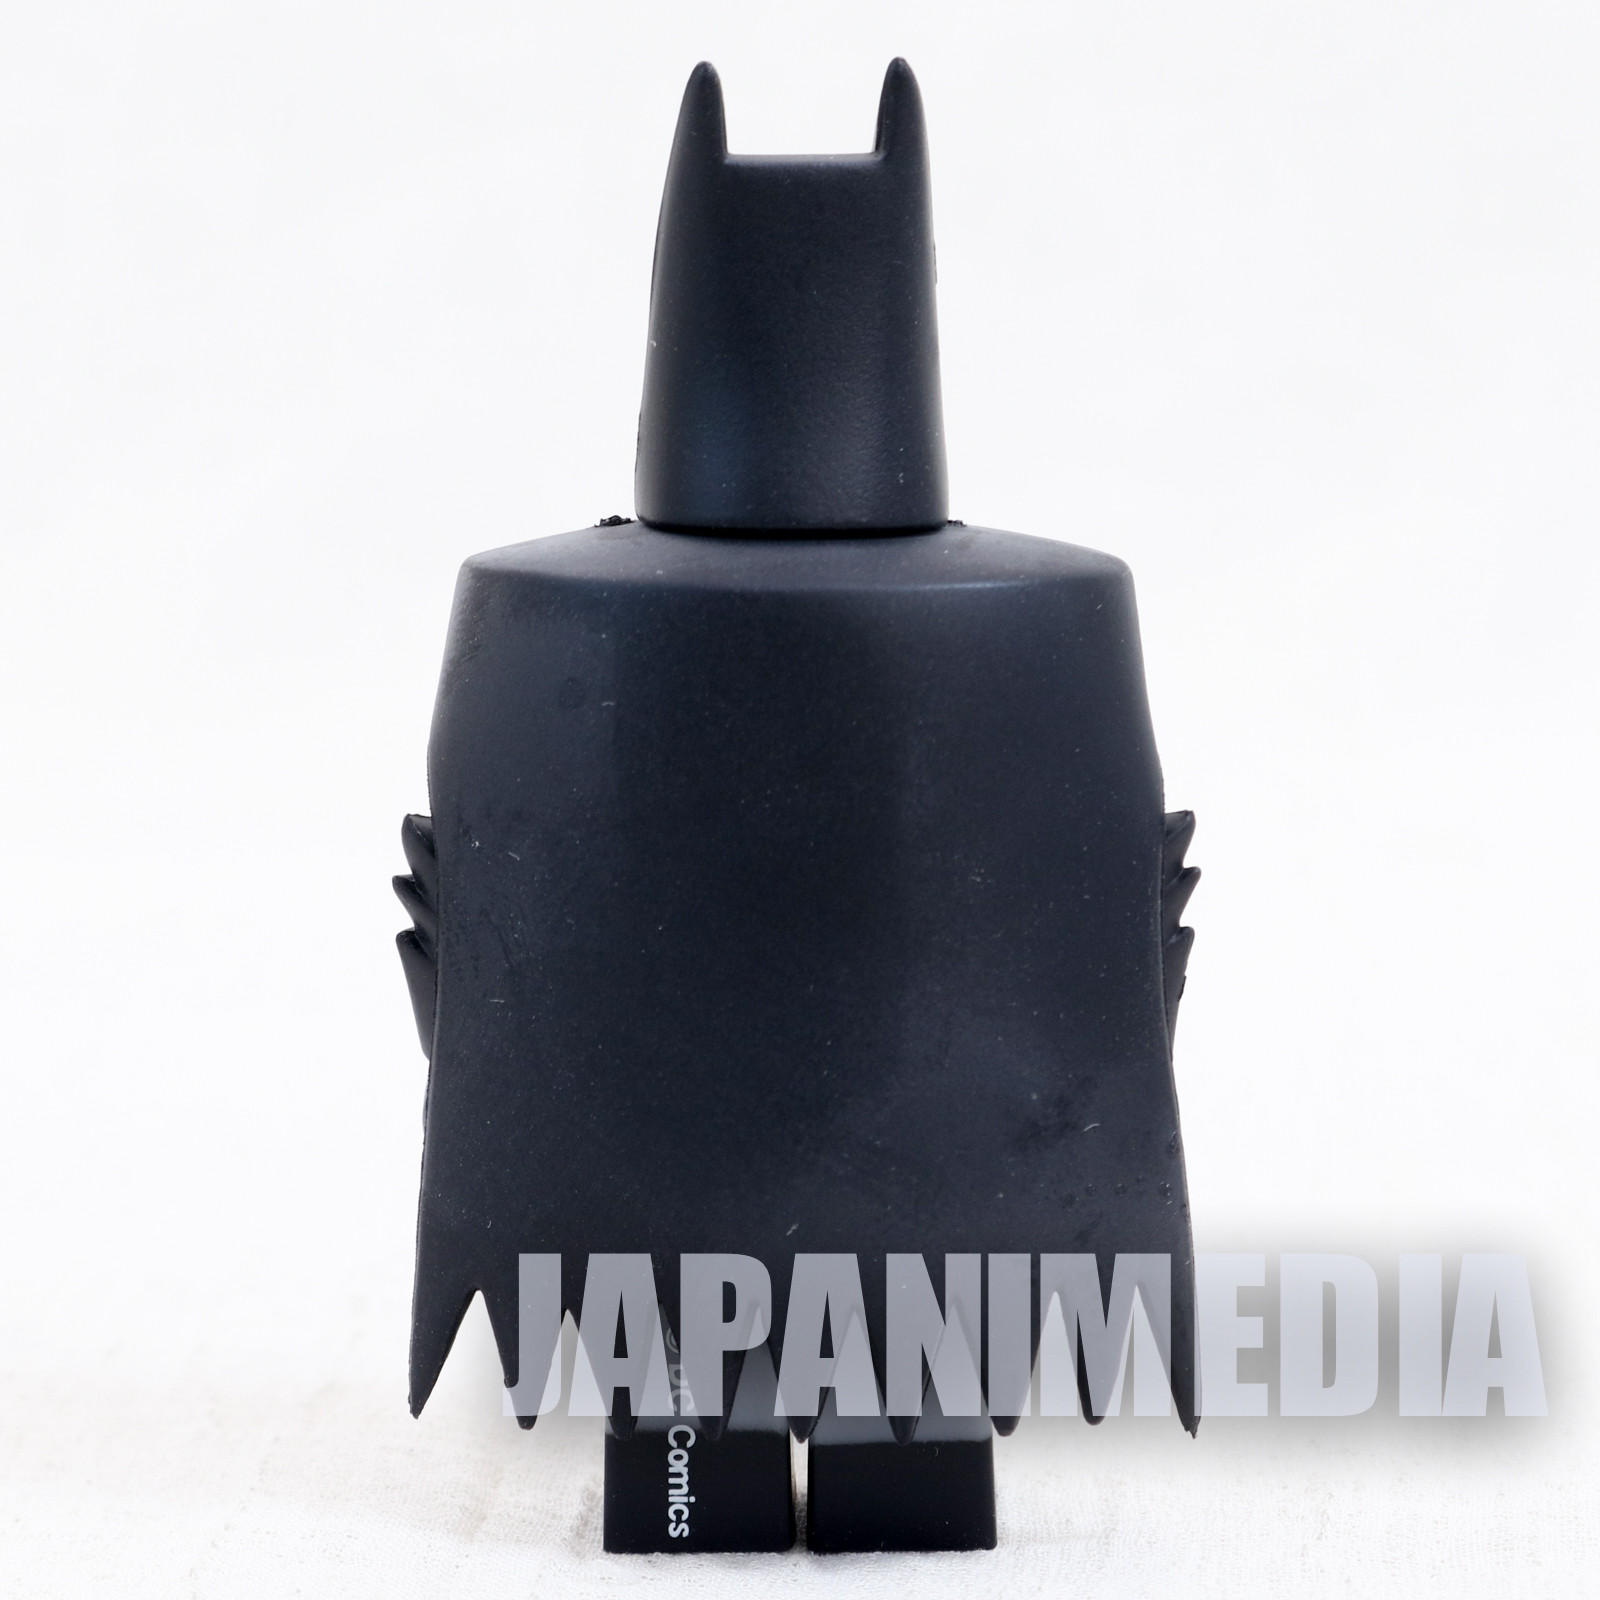 Batman Animated Matmant Kubrick Medicom Toy Figure JAPAN